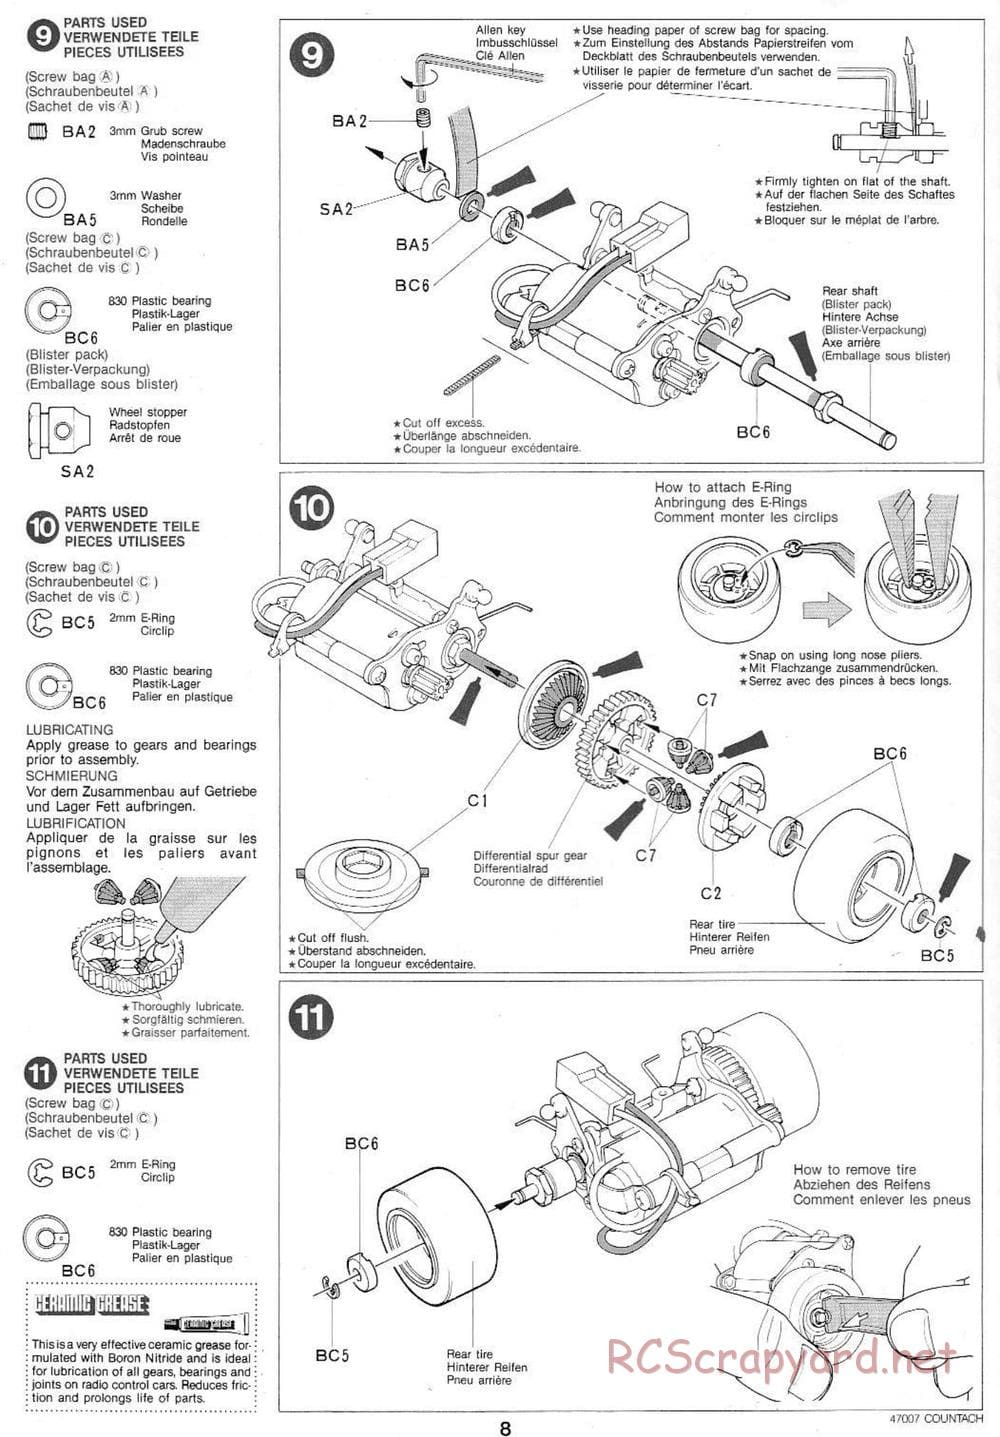 Tamiya - Tamtech - Lamborghini Countach 5000 Chassis - Manual - Page 8